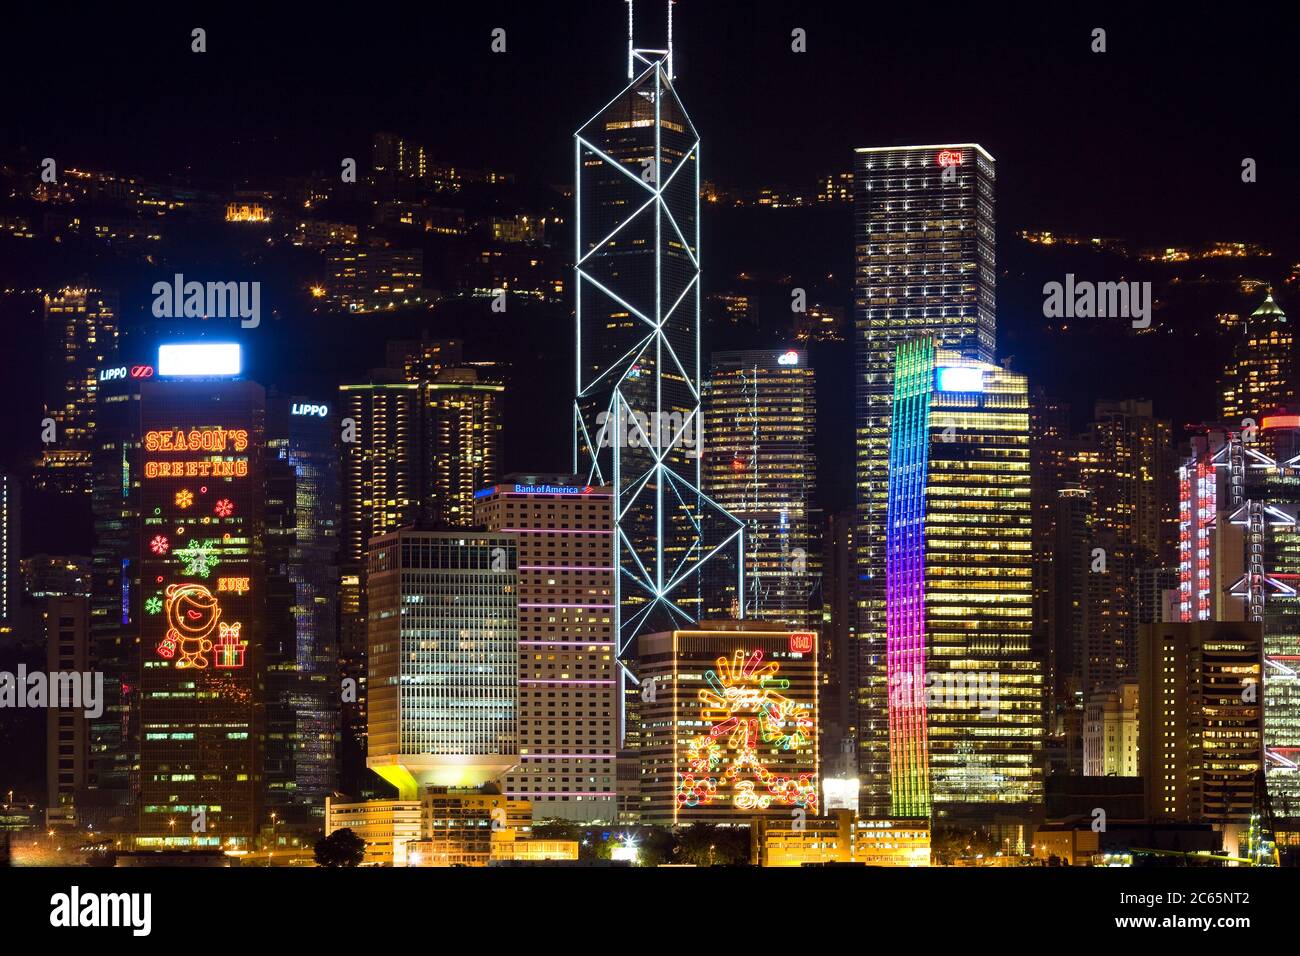 Hong Kong, China - Skyline of Victoria Harbor at night. Stock Photo